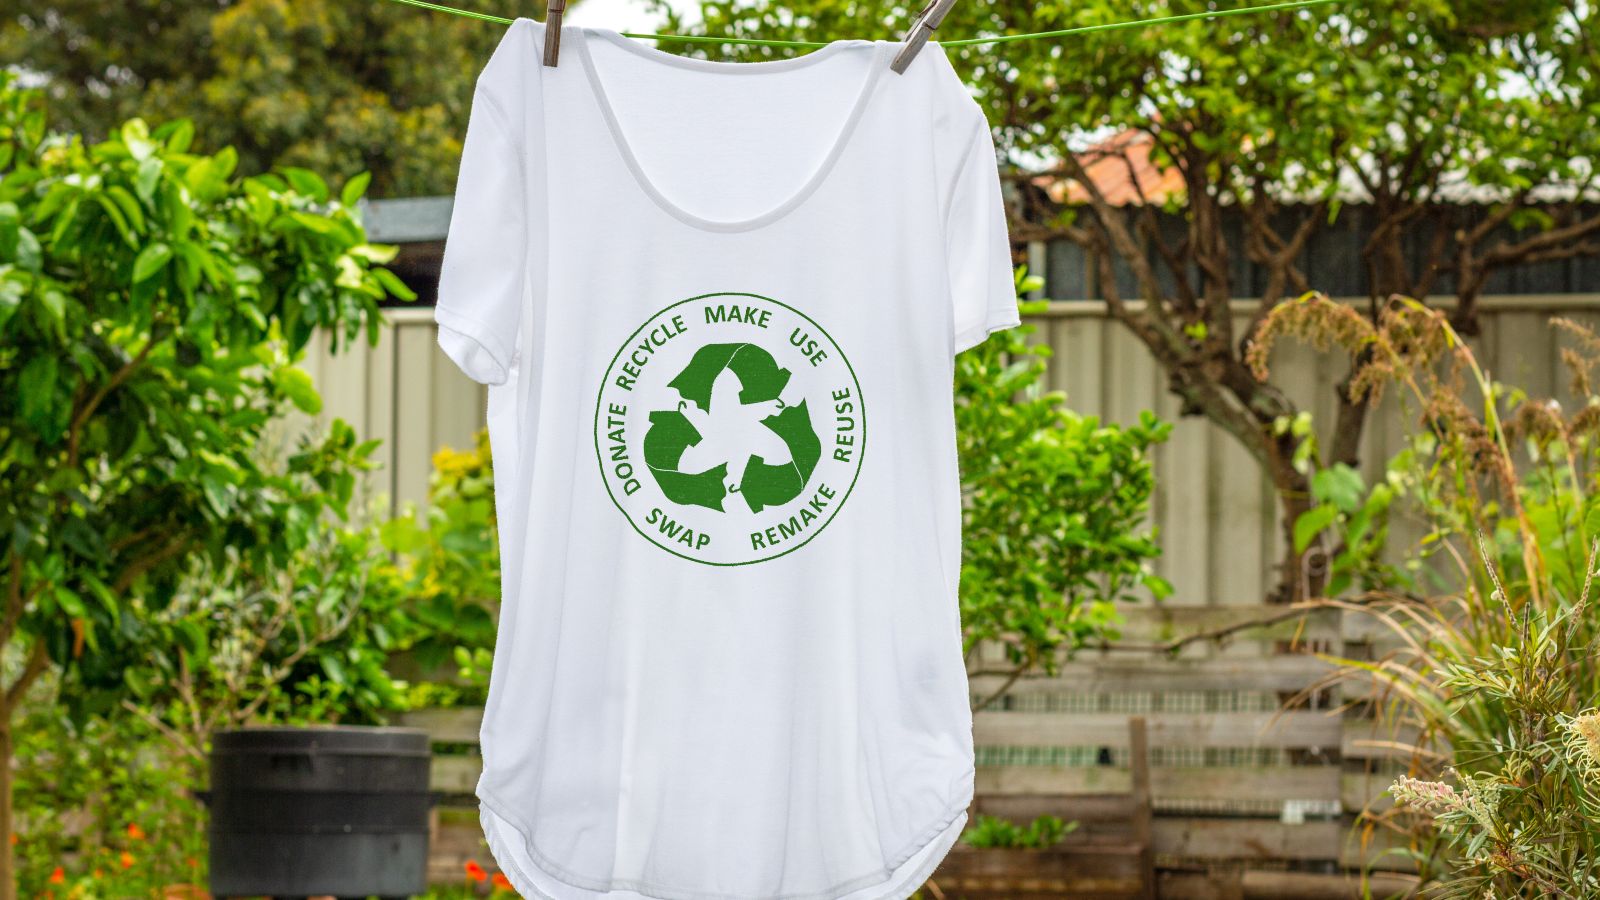 Ein weißes T-Shirt mit einer grünen Abbildung eines Recyclingkreislaufs hängt auf einer Leine in einem grünen Garten